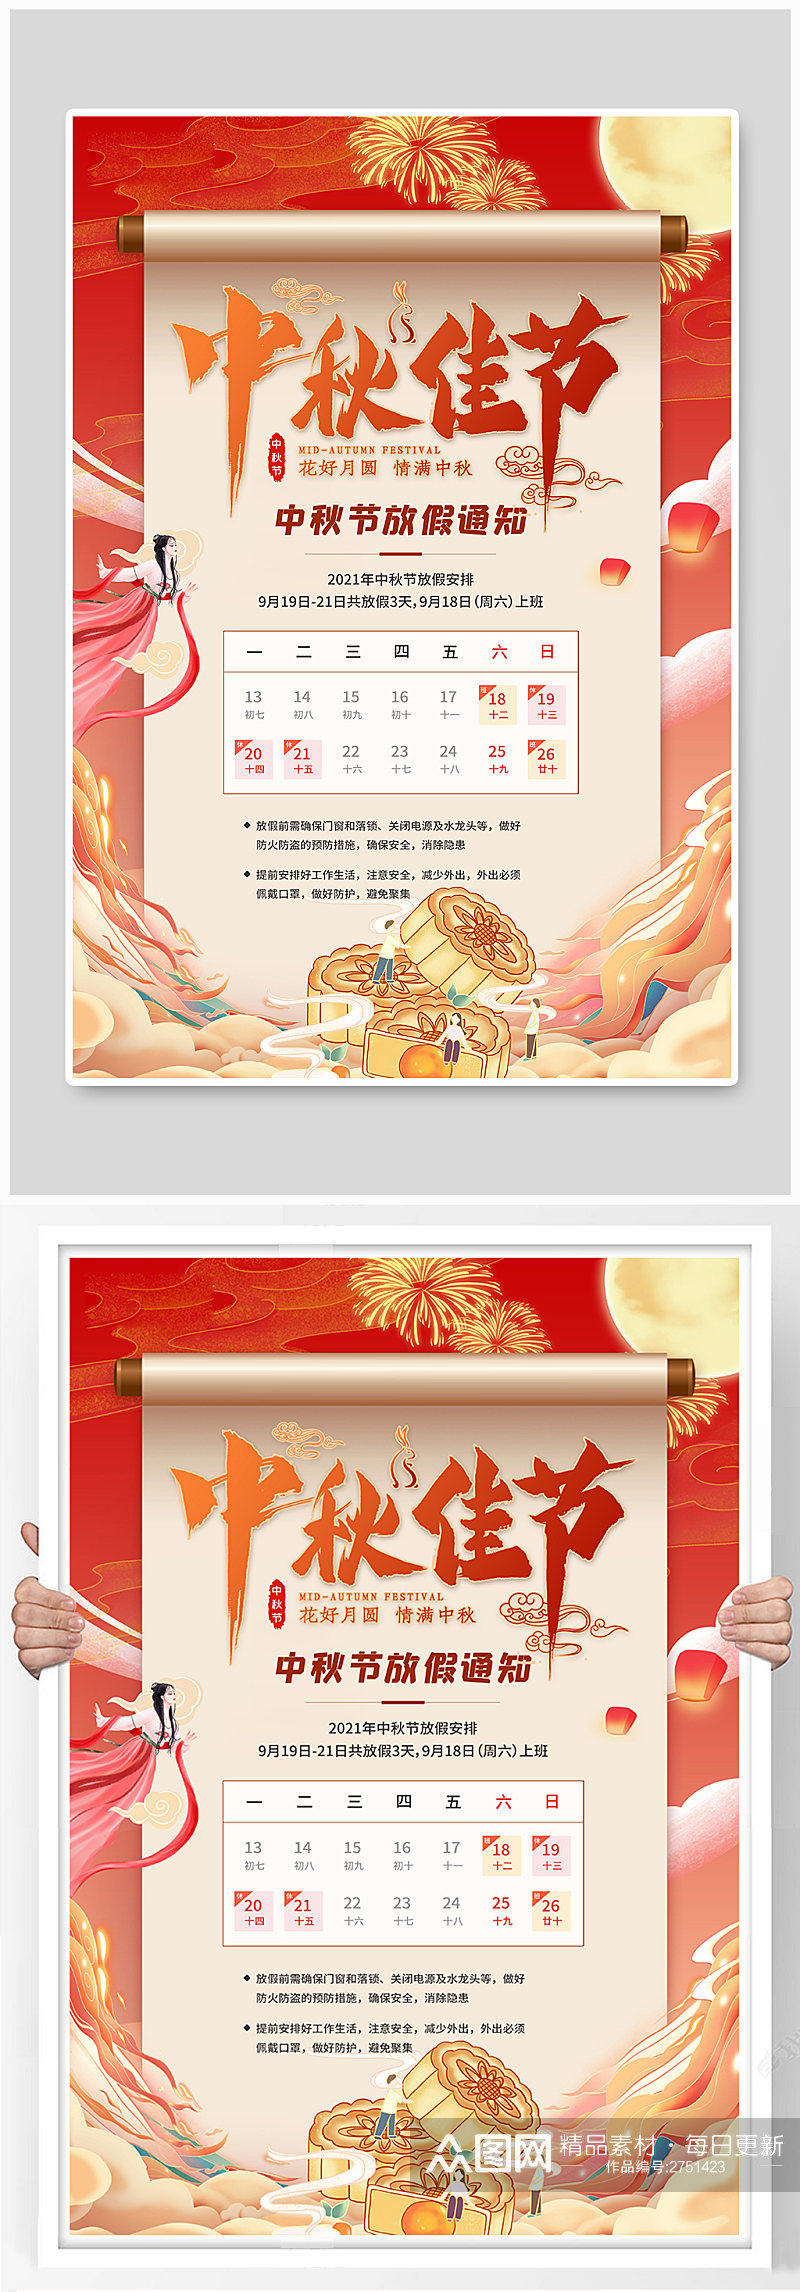 中秋节放假通知橙色创意海报素材